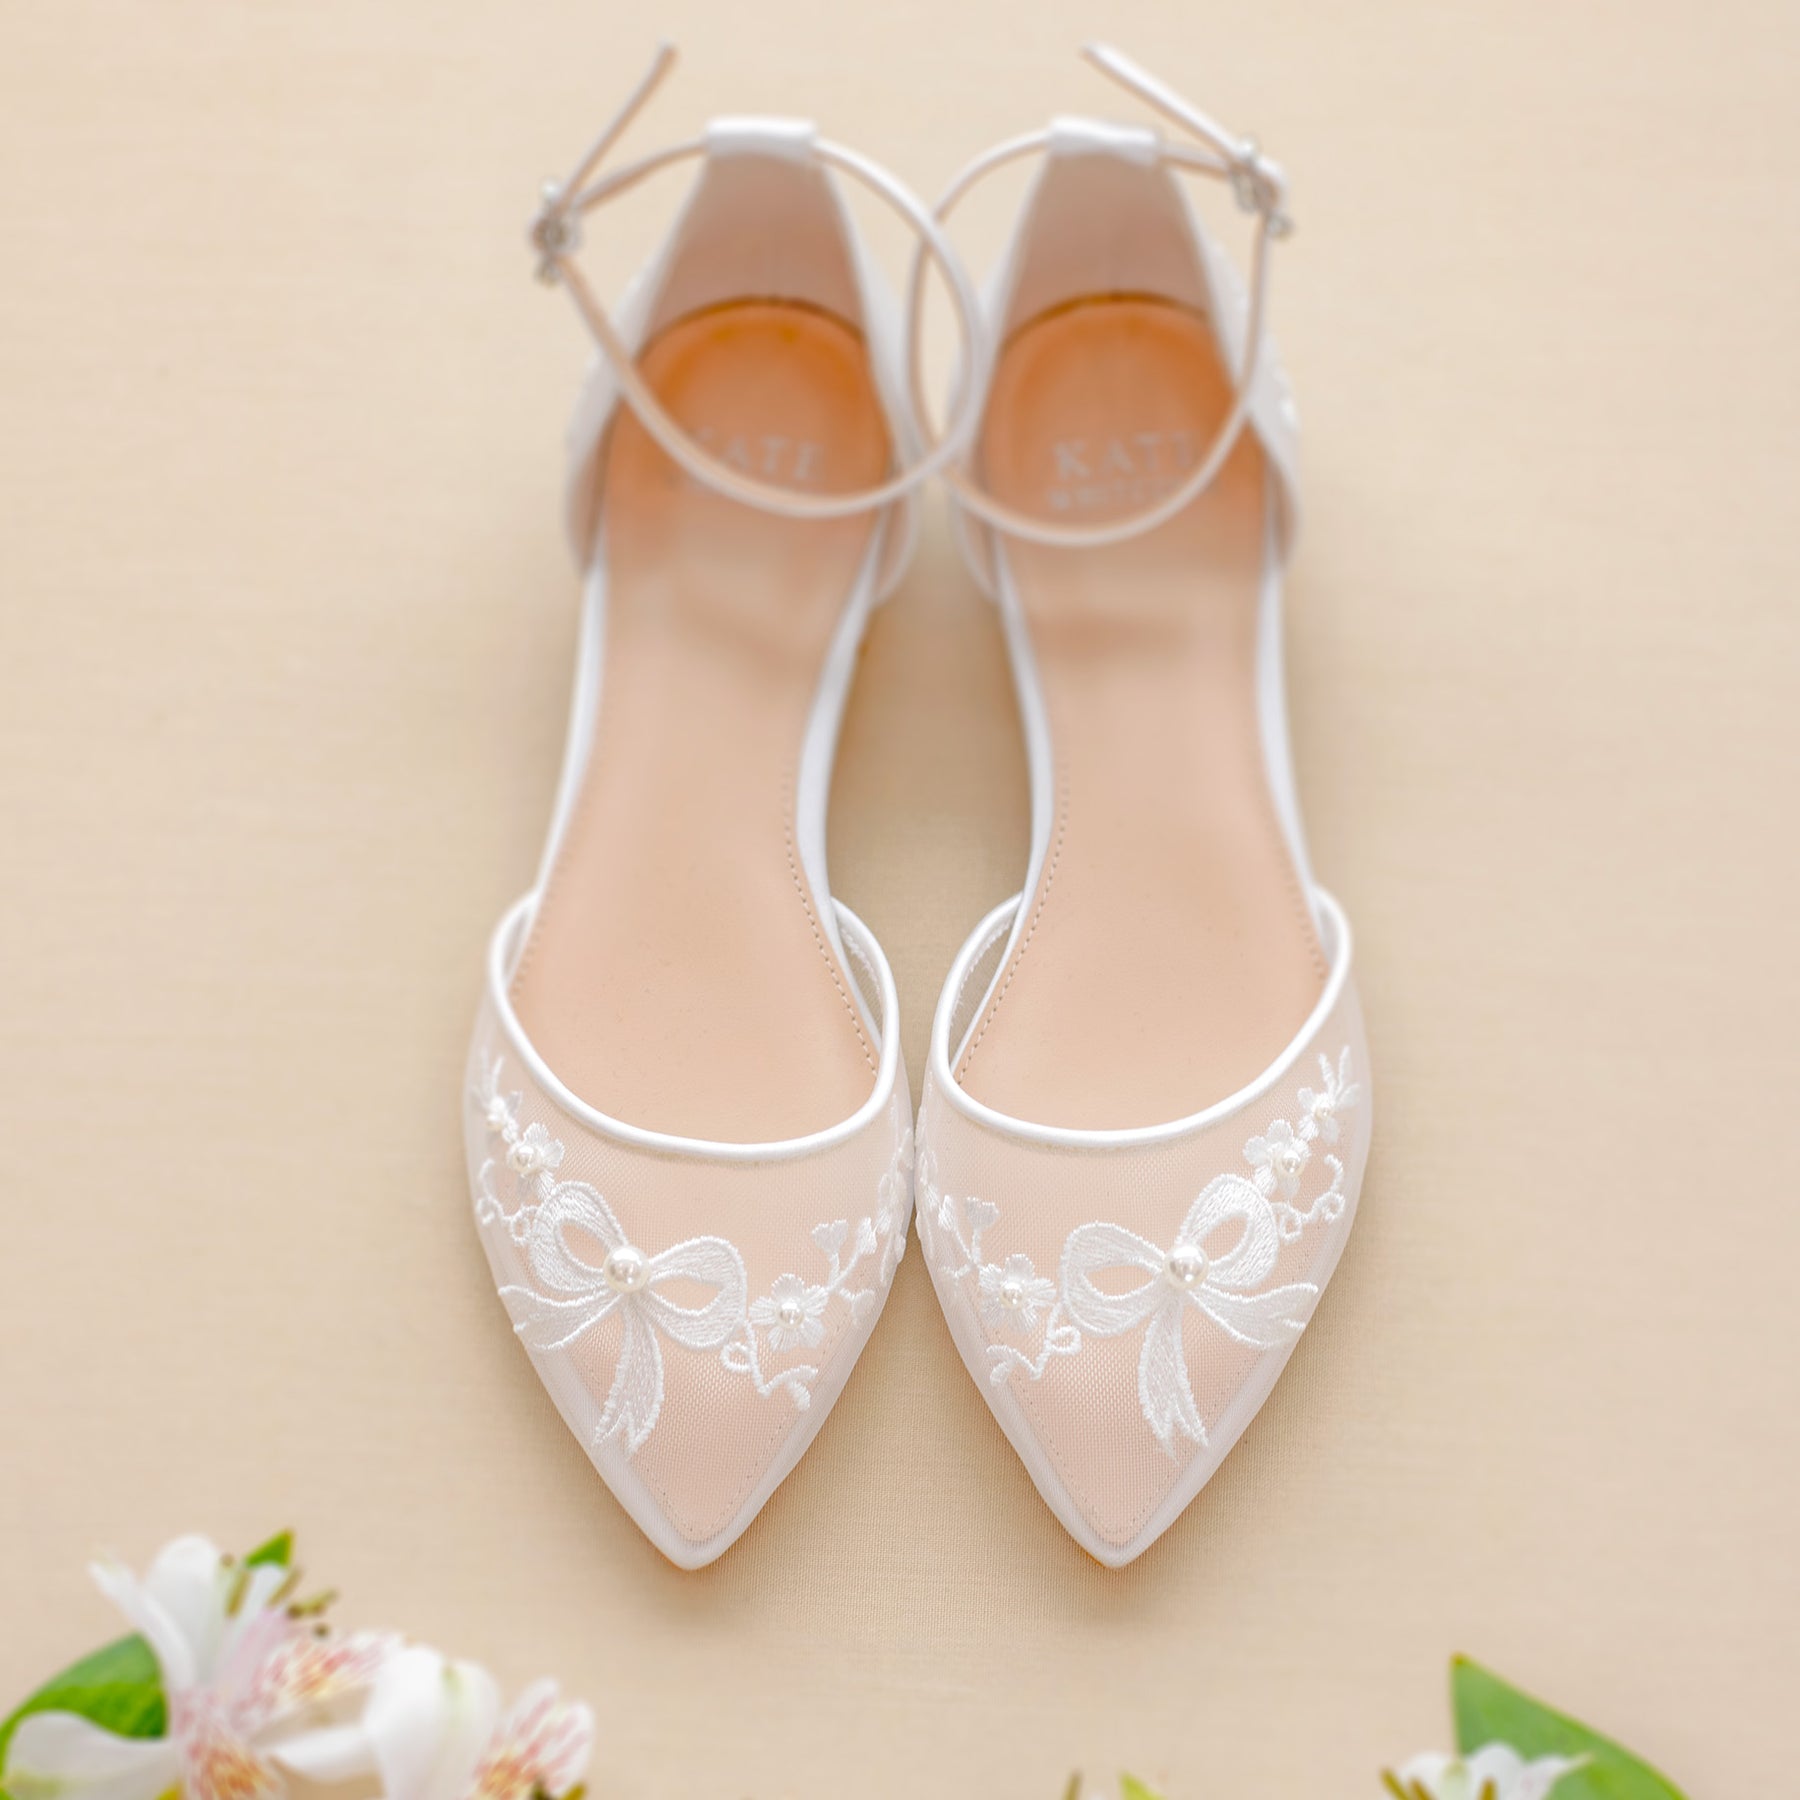 Wedding Flats, Bridal Flat Shoes, Comfortable Ballet Flats for Bride ...